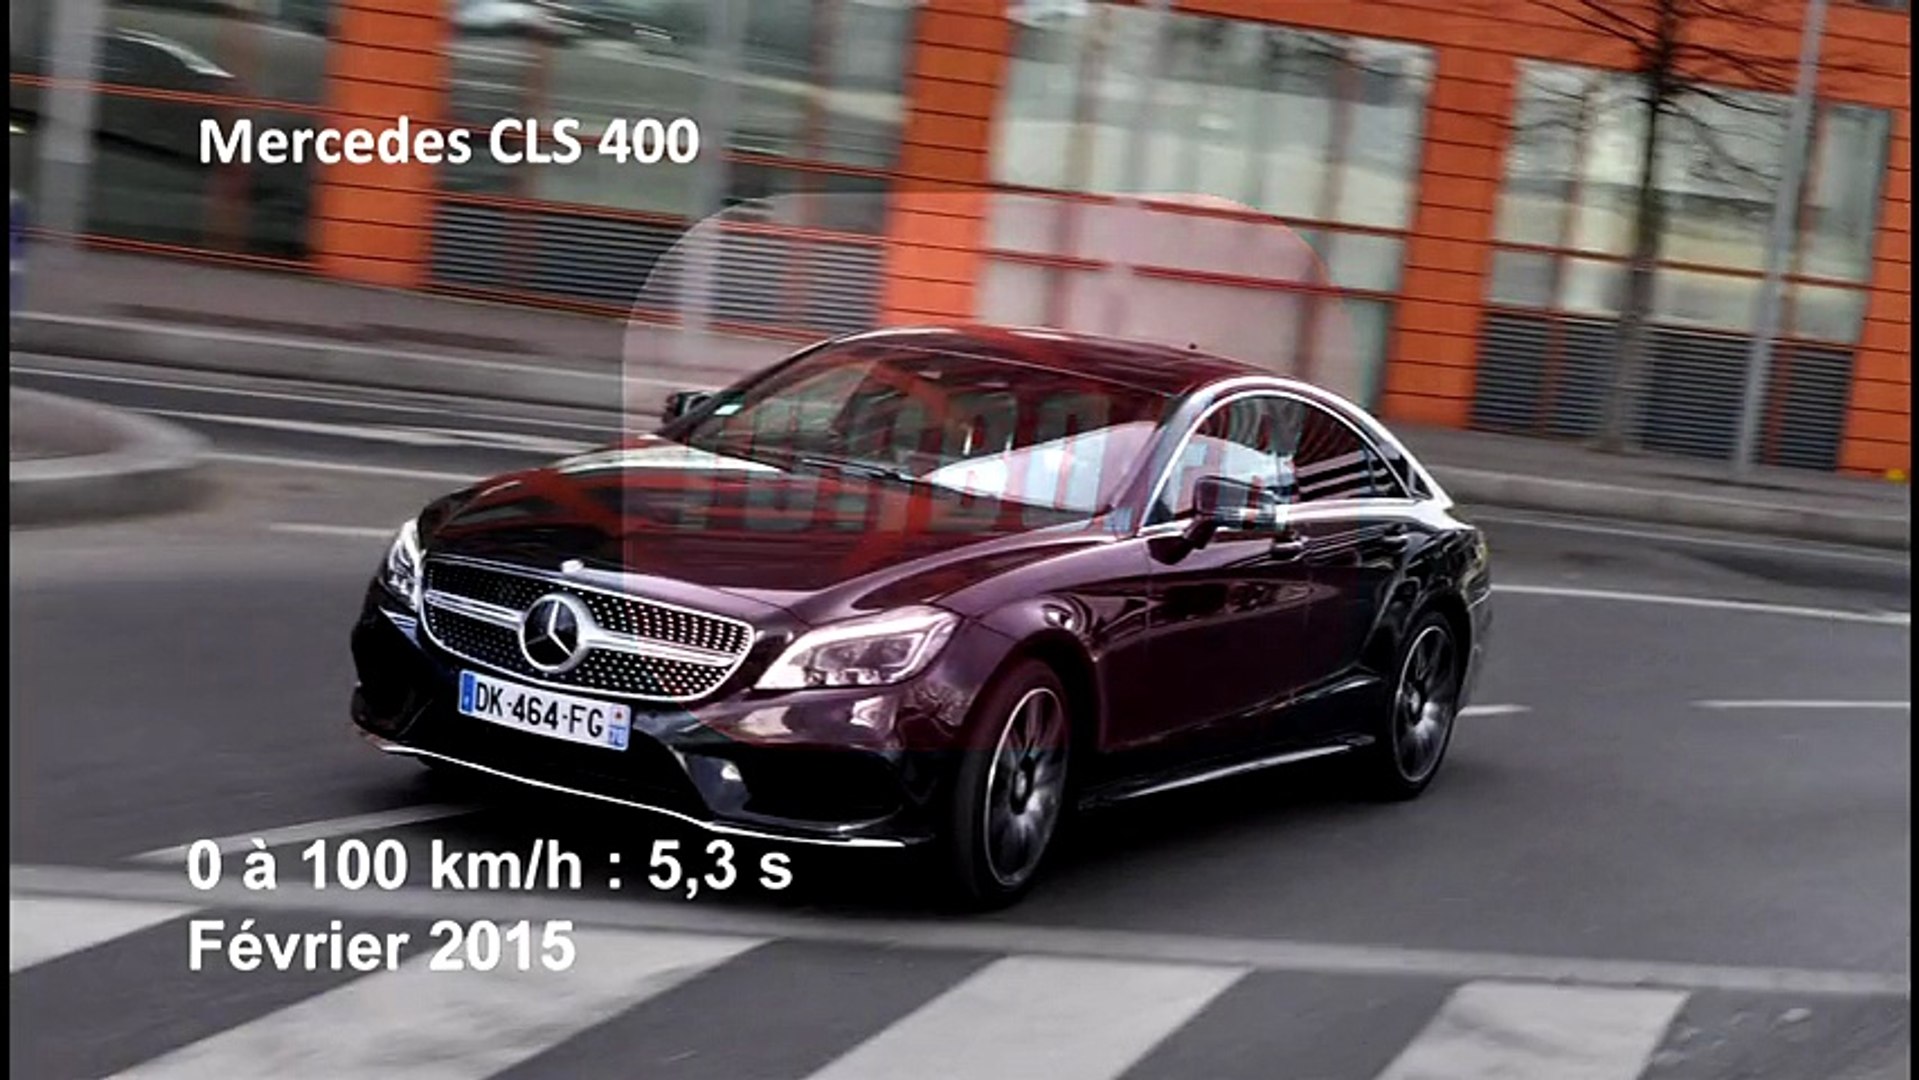 Vidéo : le 0 à 100 km/h à bord du Mercedes CLS 400 - Vidéo Dailymotion